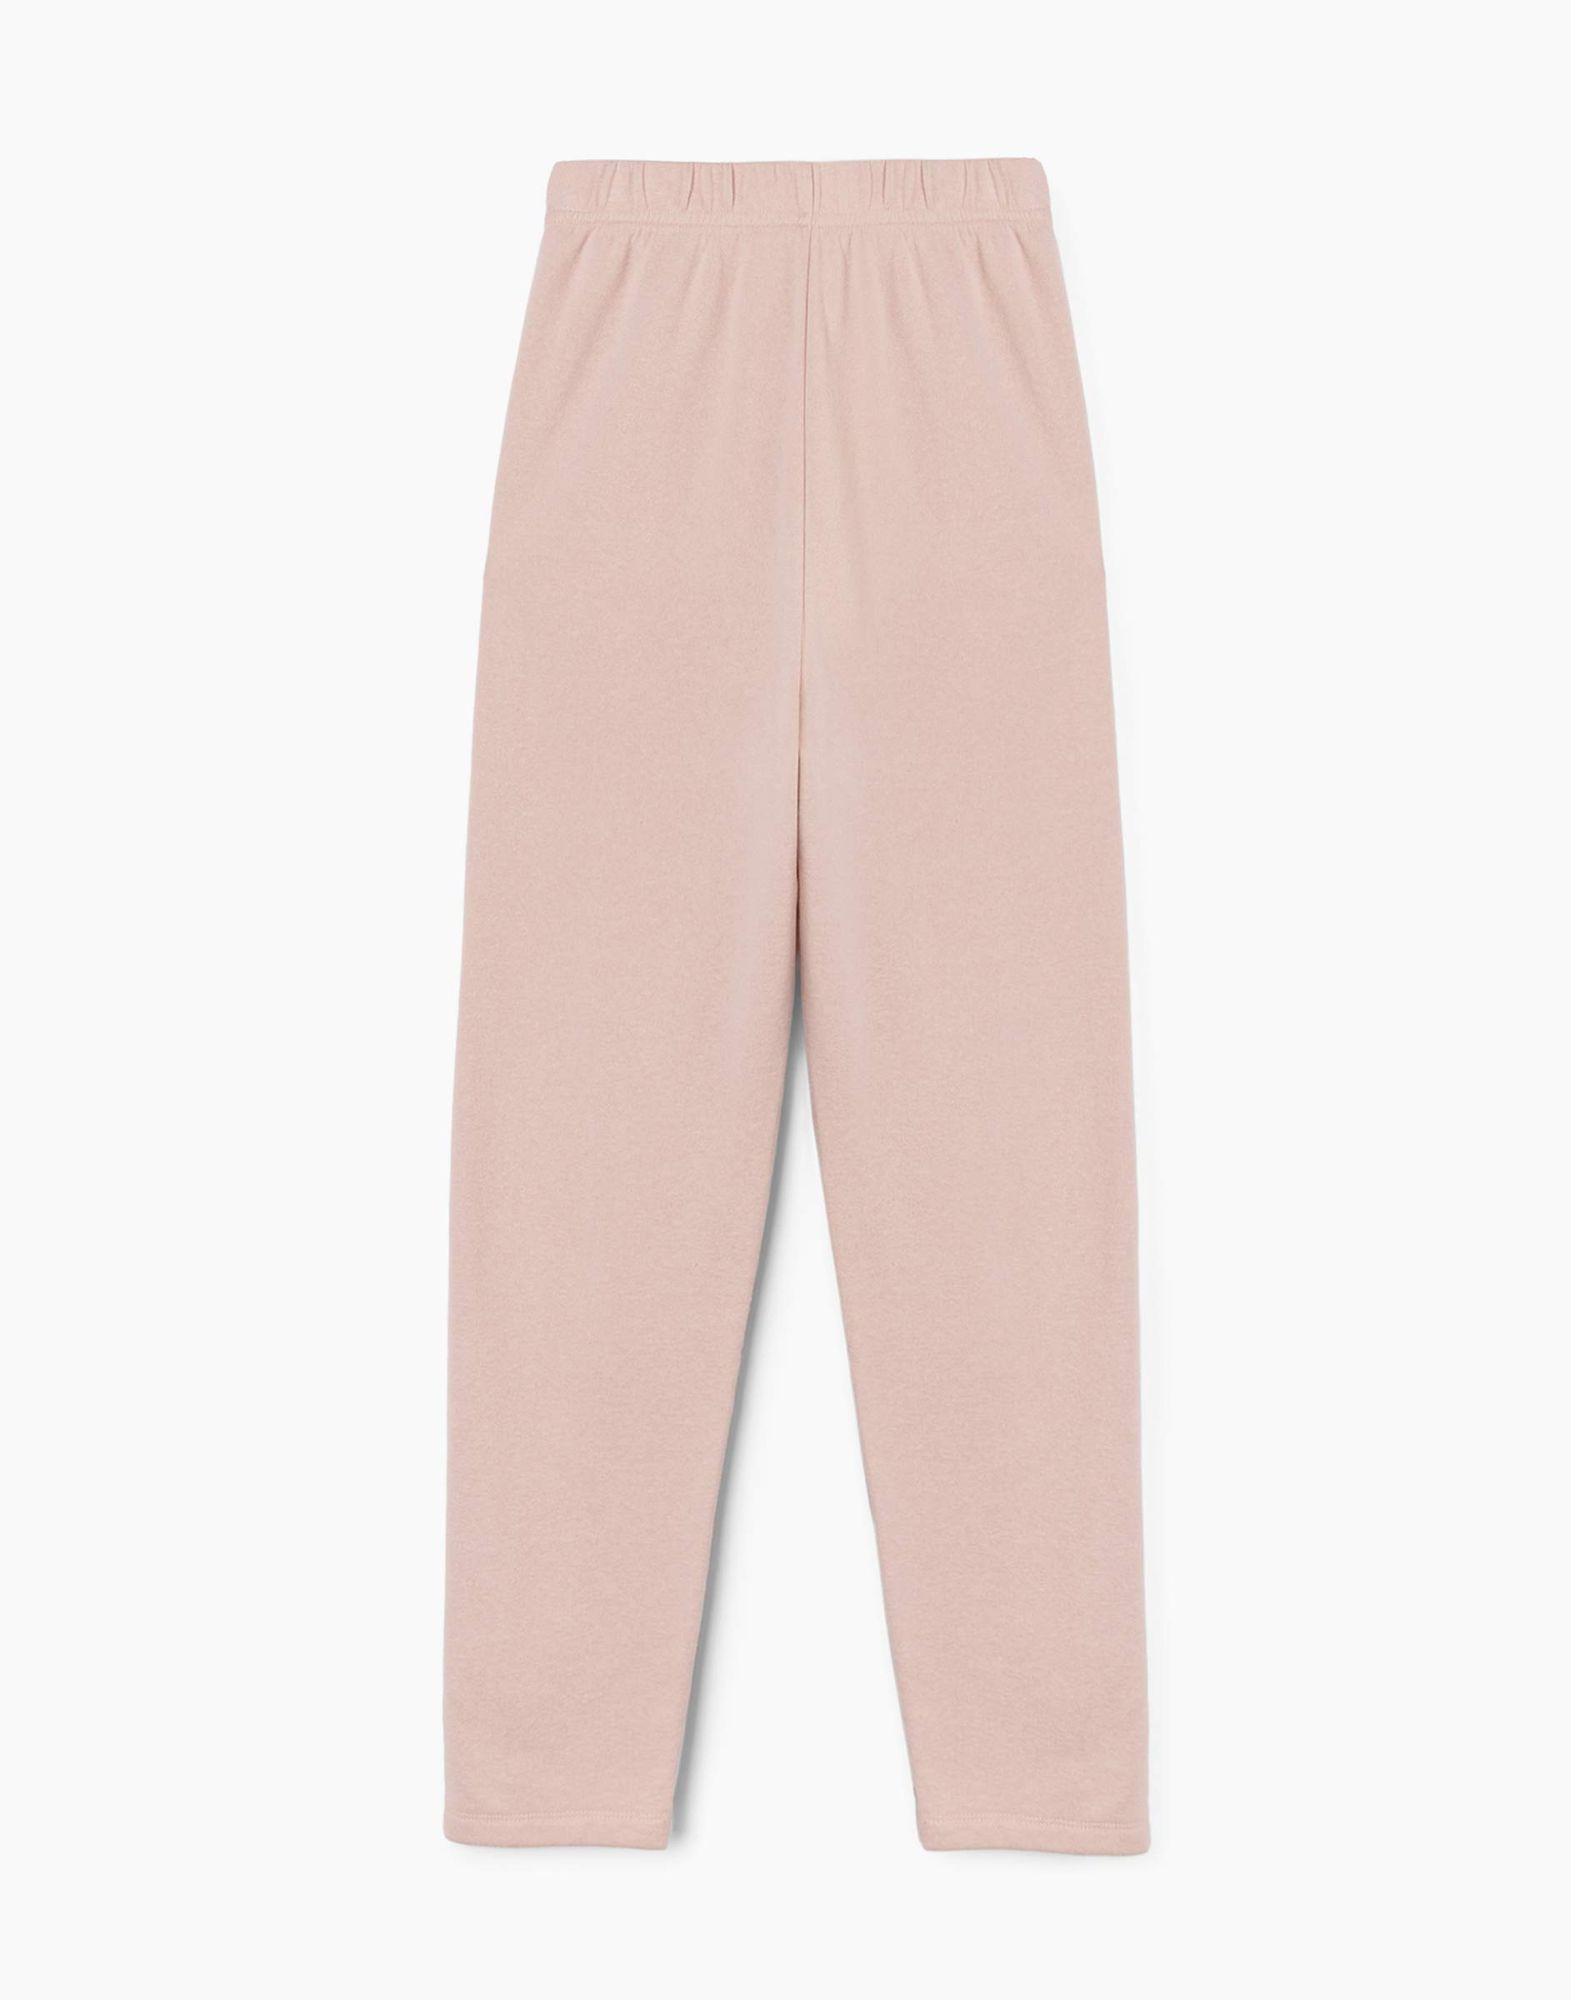 Розовые домашние брюки для девочки-2